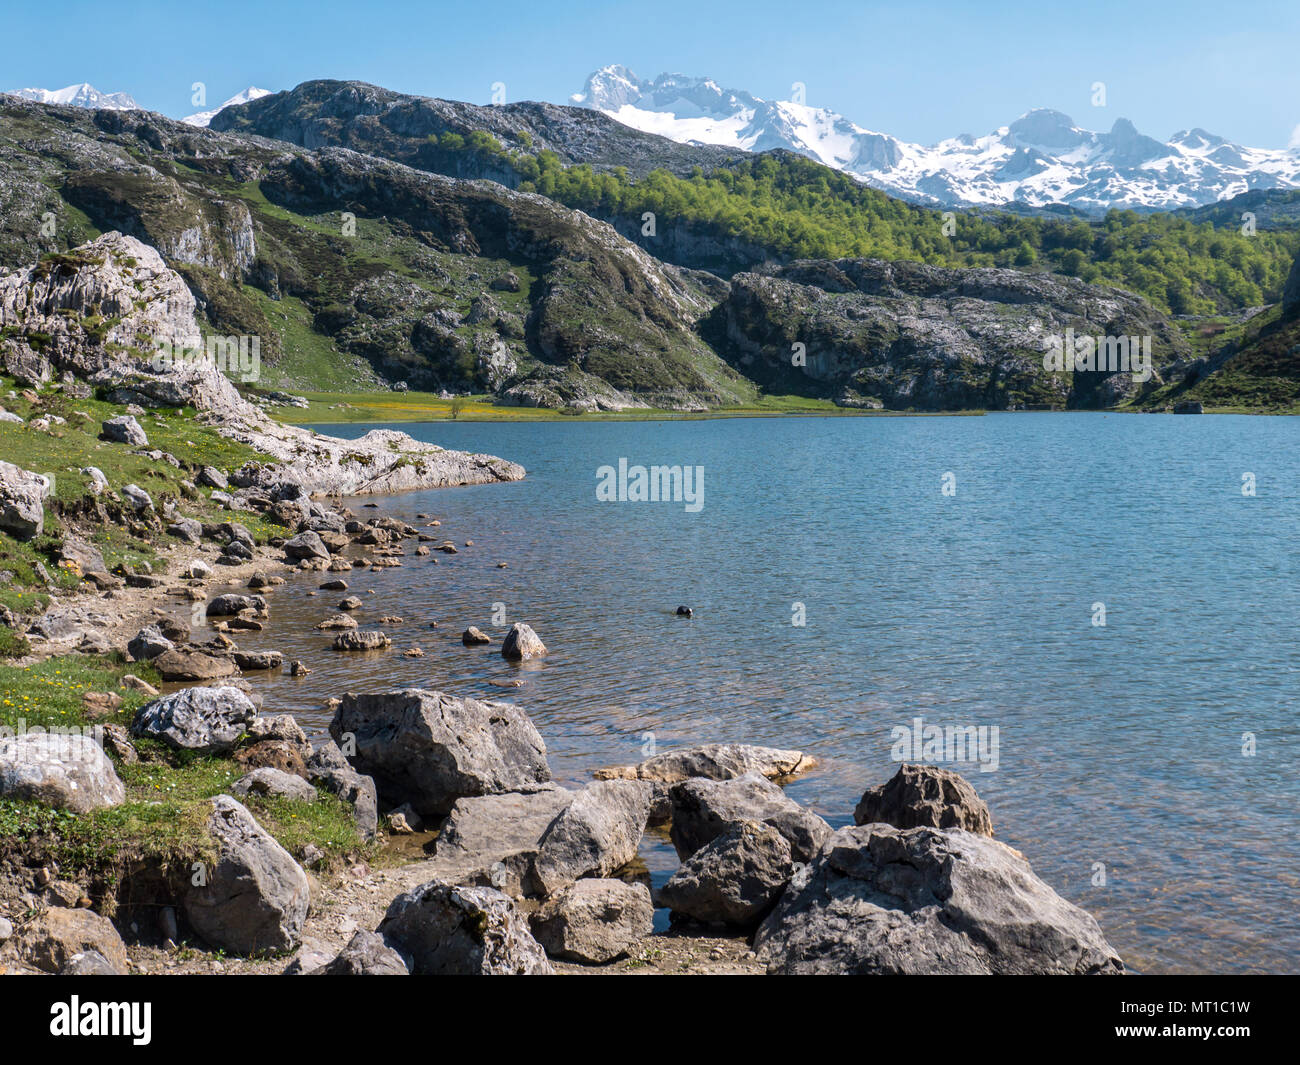 Les Lacs de Covadonga. Lac Ercina dans le parc national de Picos de Europa, l'Espagne, les Asturies. La neige sur les sommets des montagnes. Banque D'Images